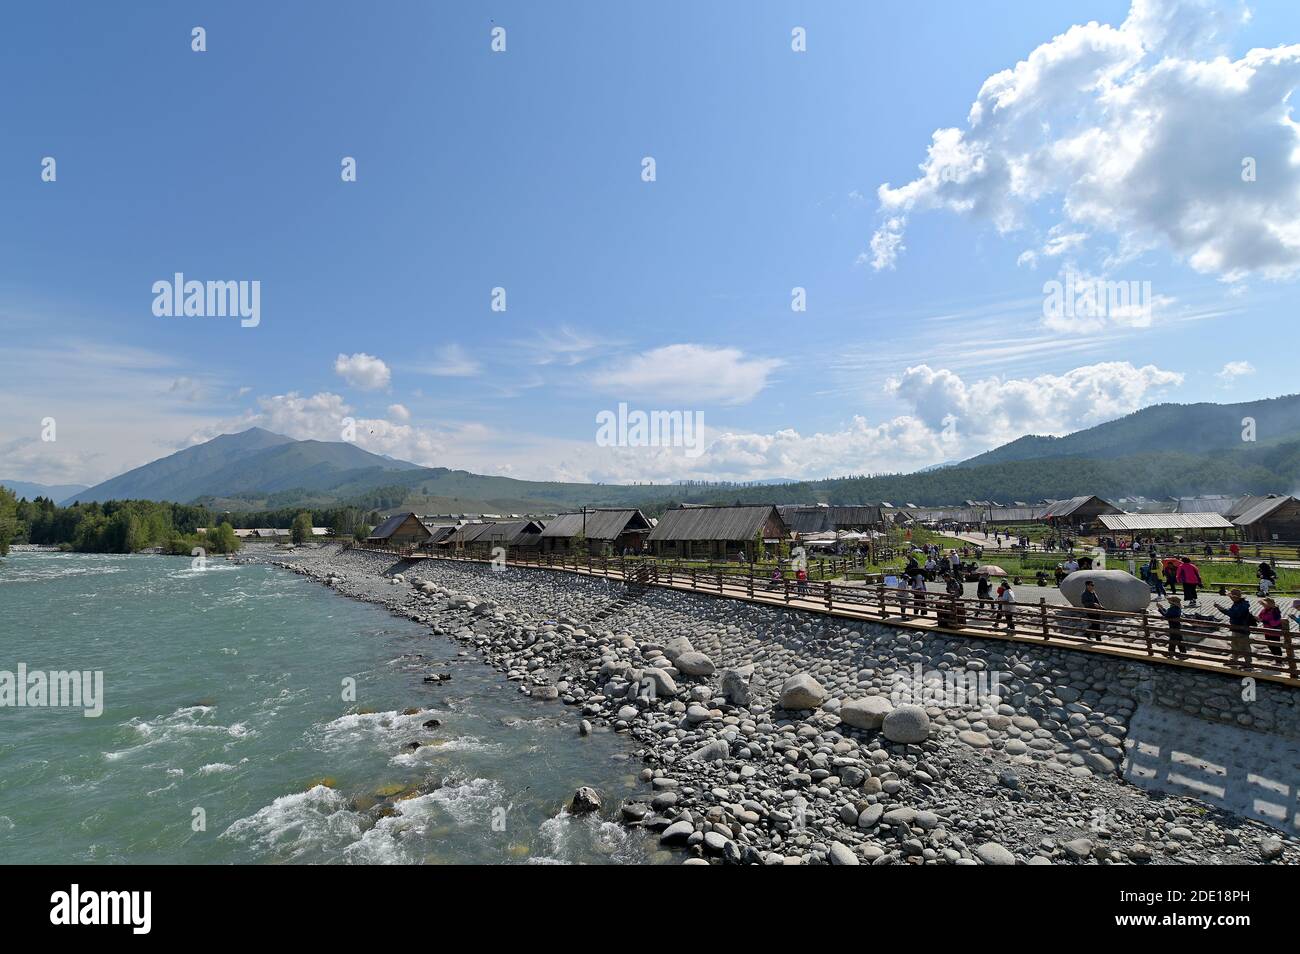 Vista sul fiume Hemu e sul villaggio di Hemu nella riserva naturale di Kanas, nella prefettura di Altai, a nord di Xinjiang, Cina Foto Stock